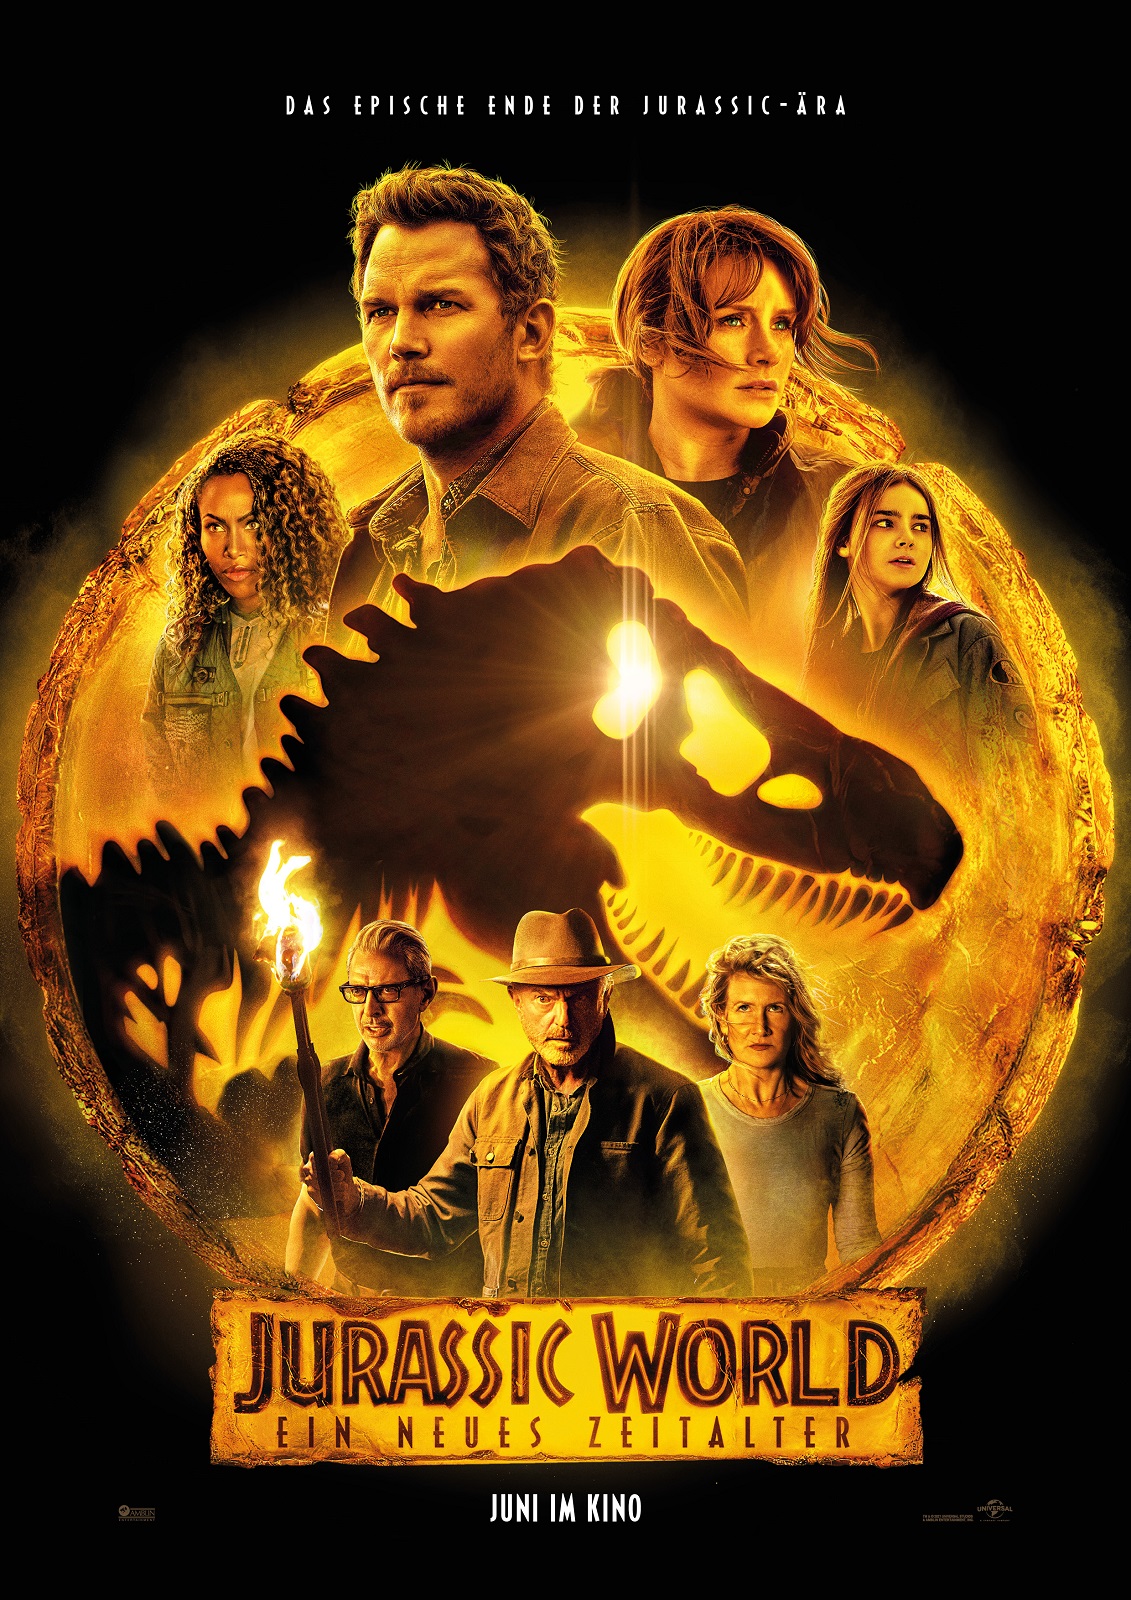 Jurassic World 3 Ein neues Zeitalter Film anschauen Online